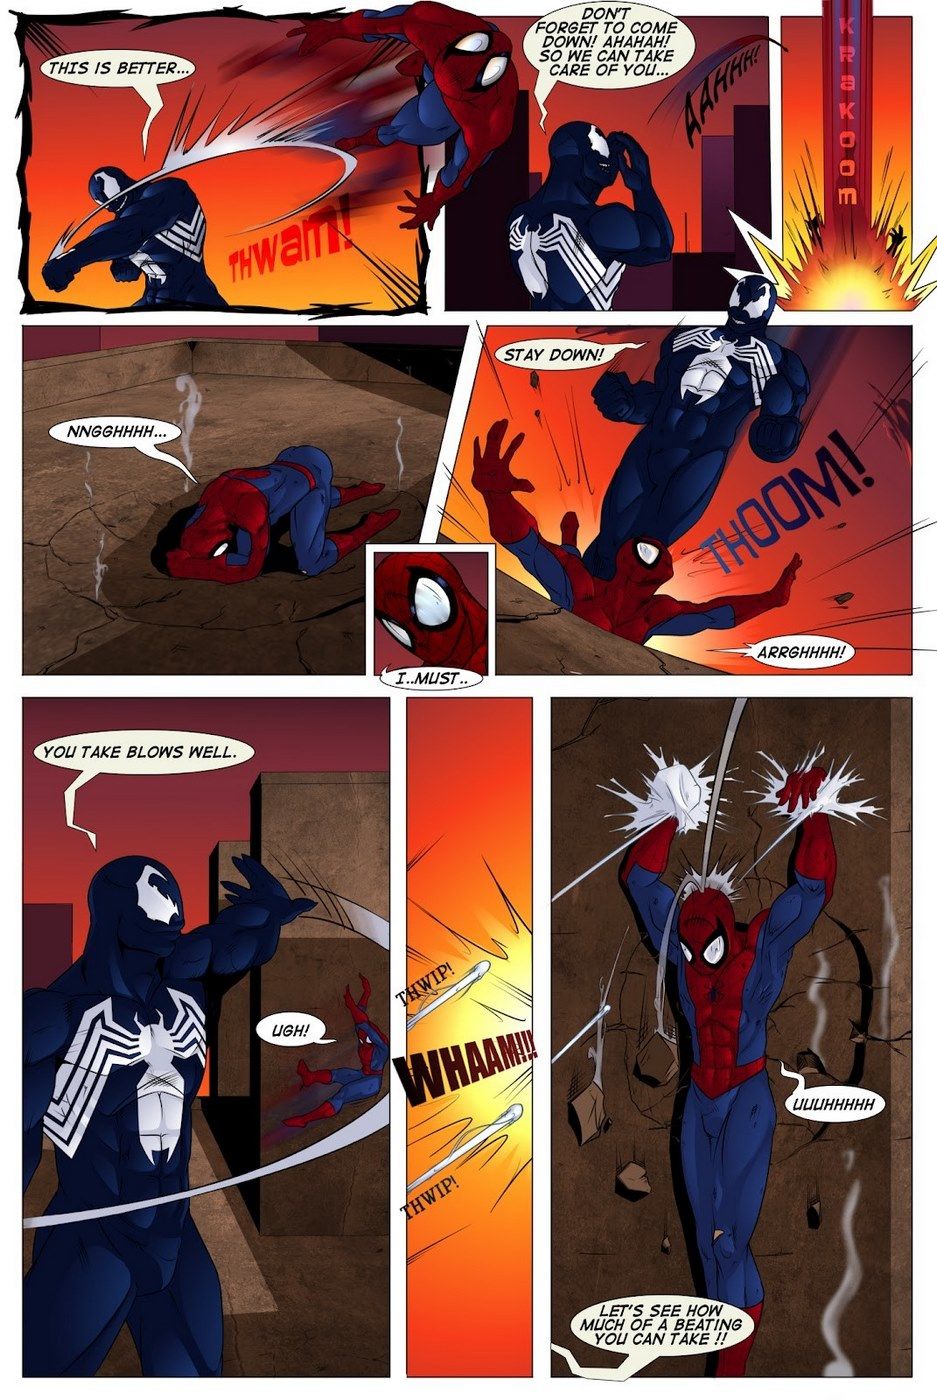 Shooters (Spider-Man Venom) page 3